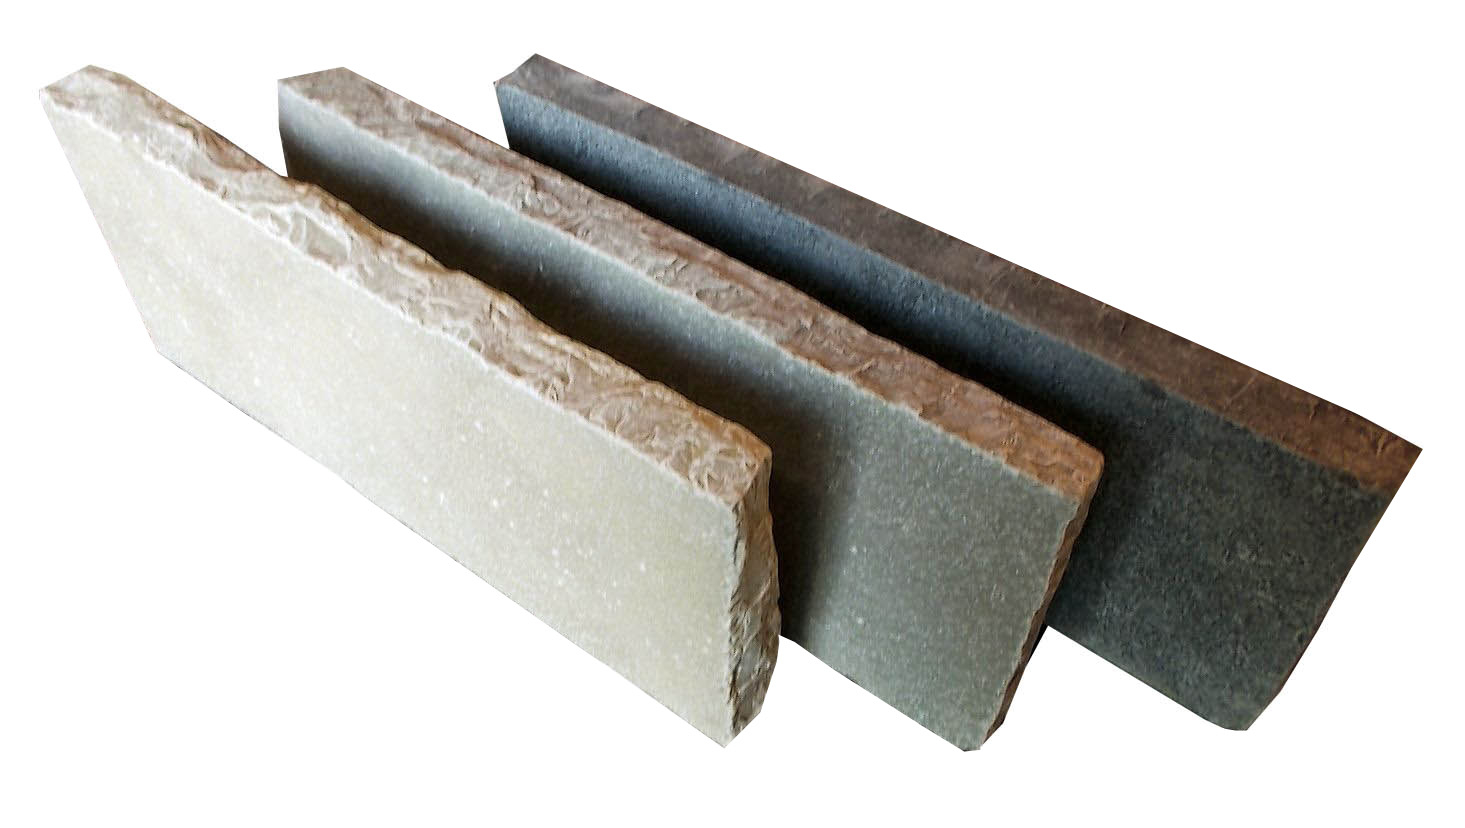 bordure-calcaire-indian-50x20x3-5cm-black-bord-clive-edycem-0